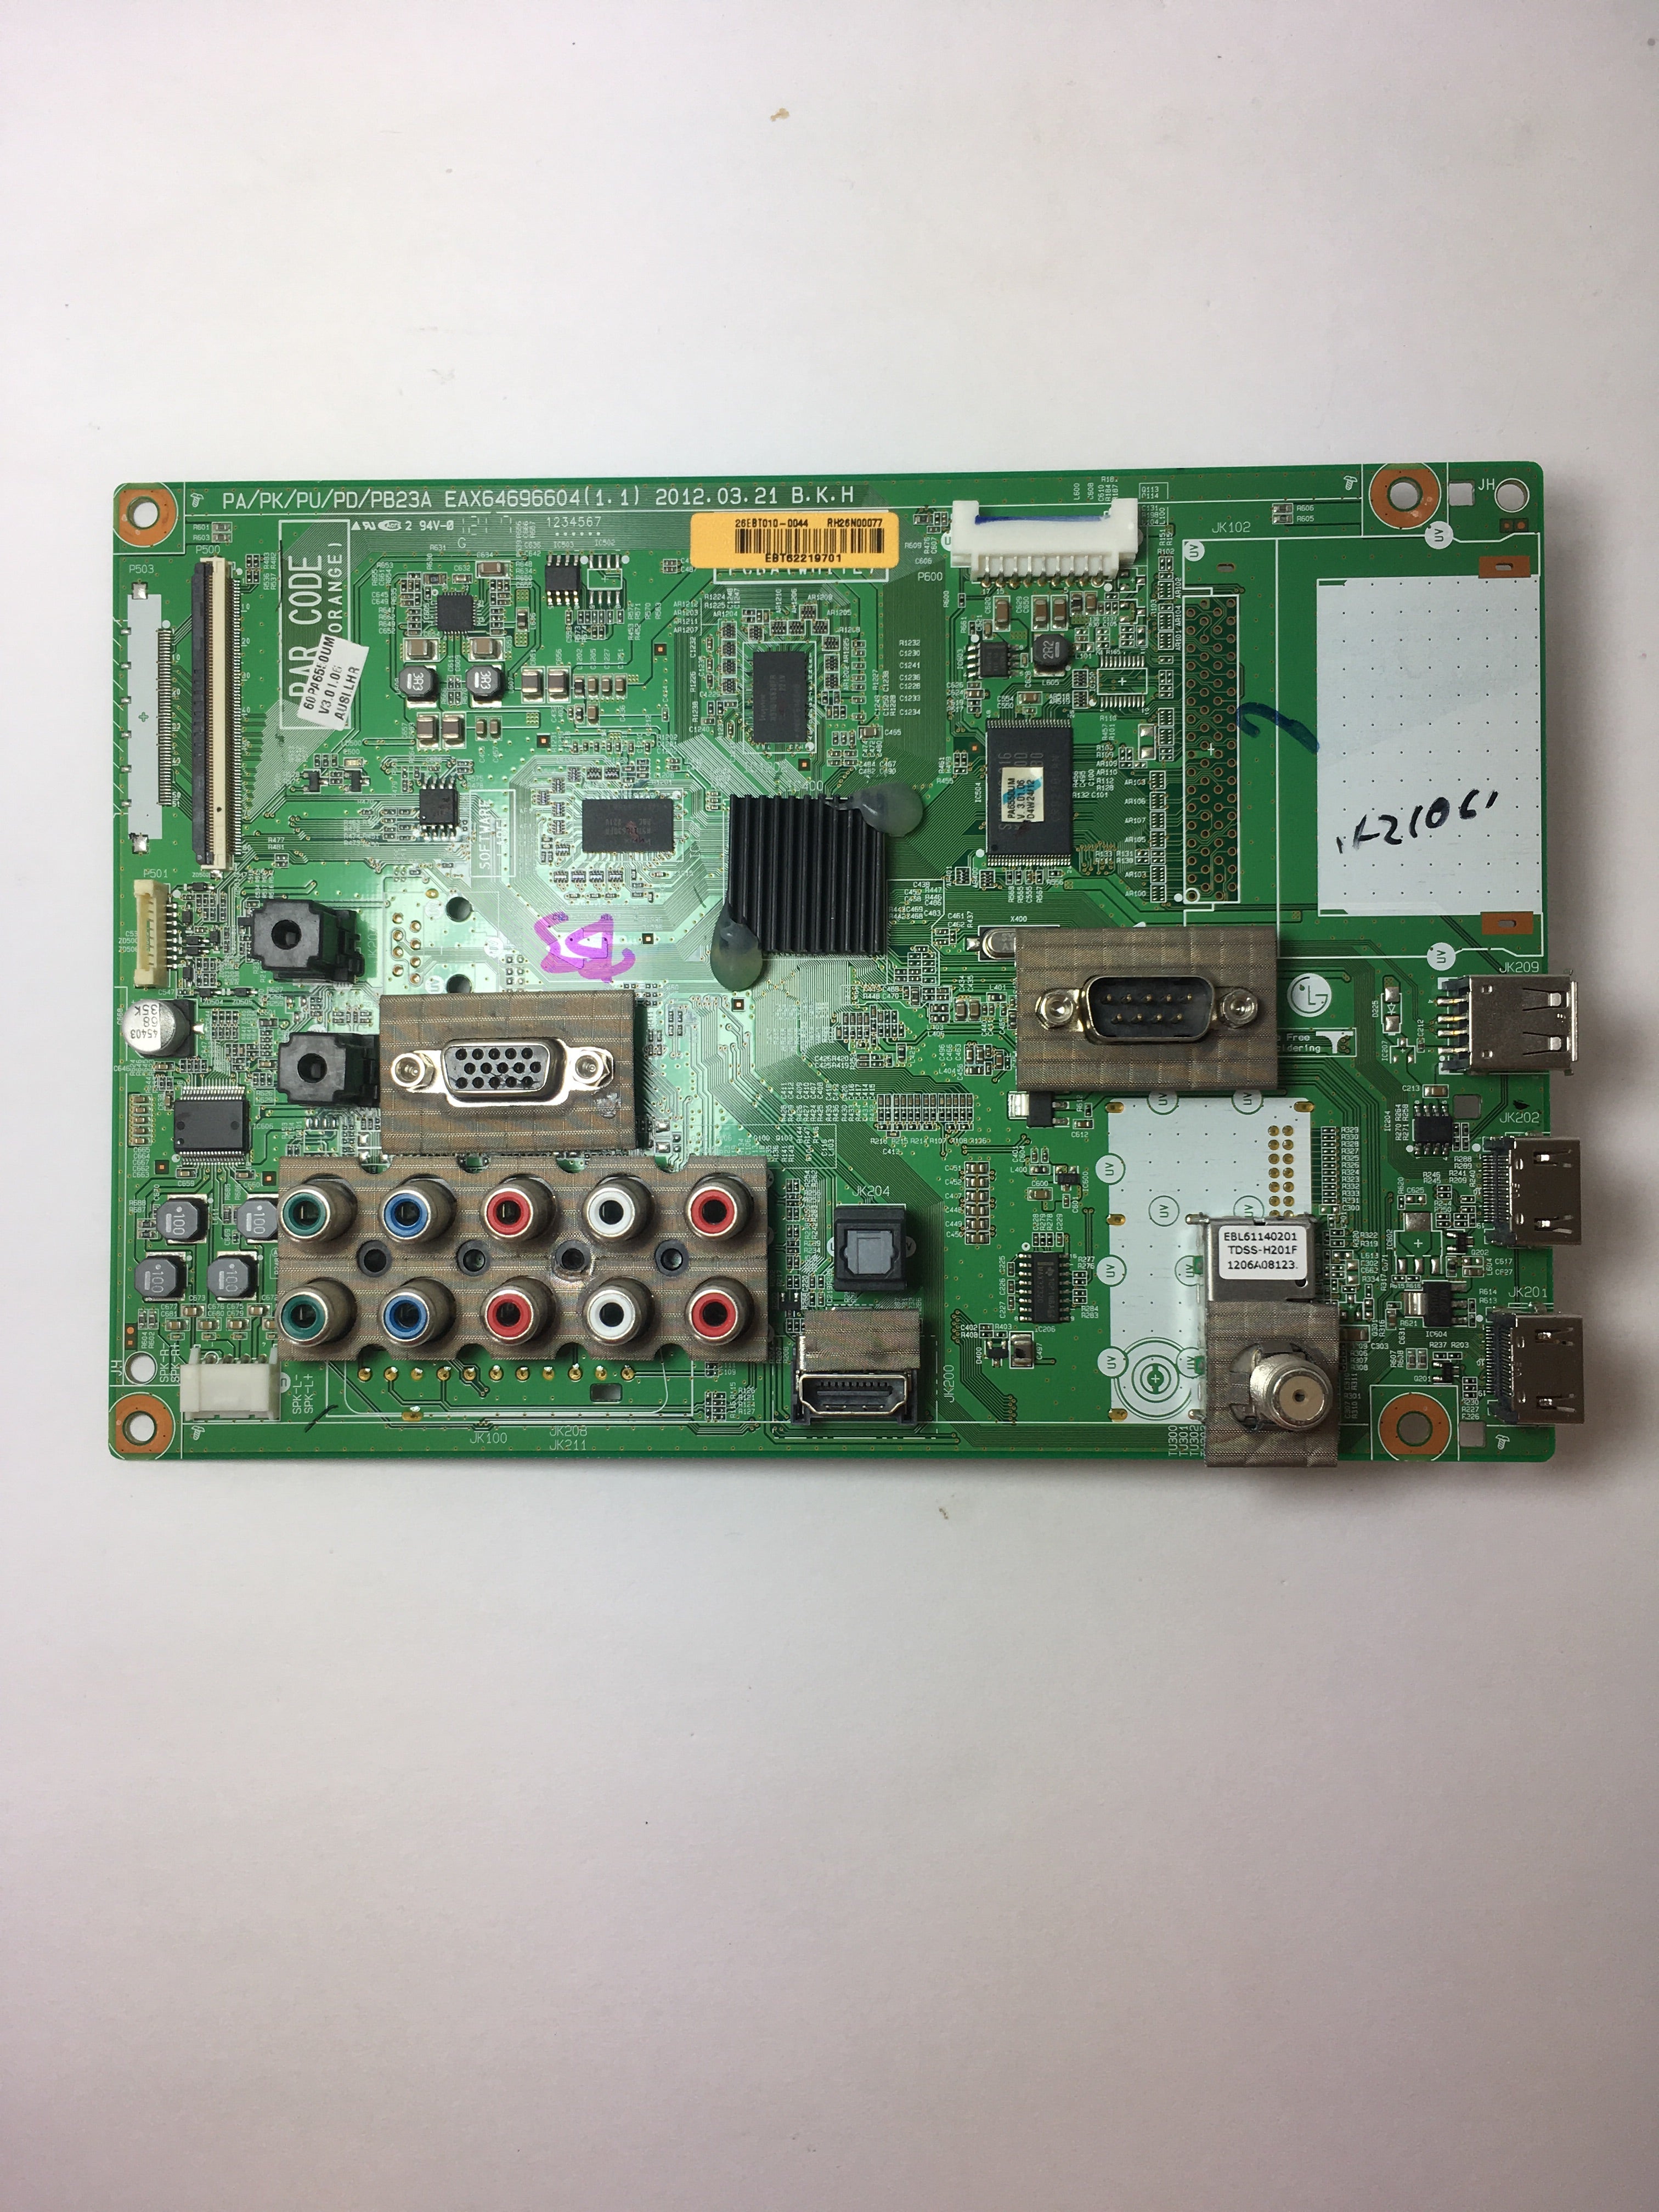 LG EBT62219701 (EAX64696604(1.1)) Main Board for 60PA6550-UM